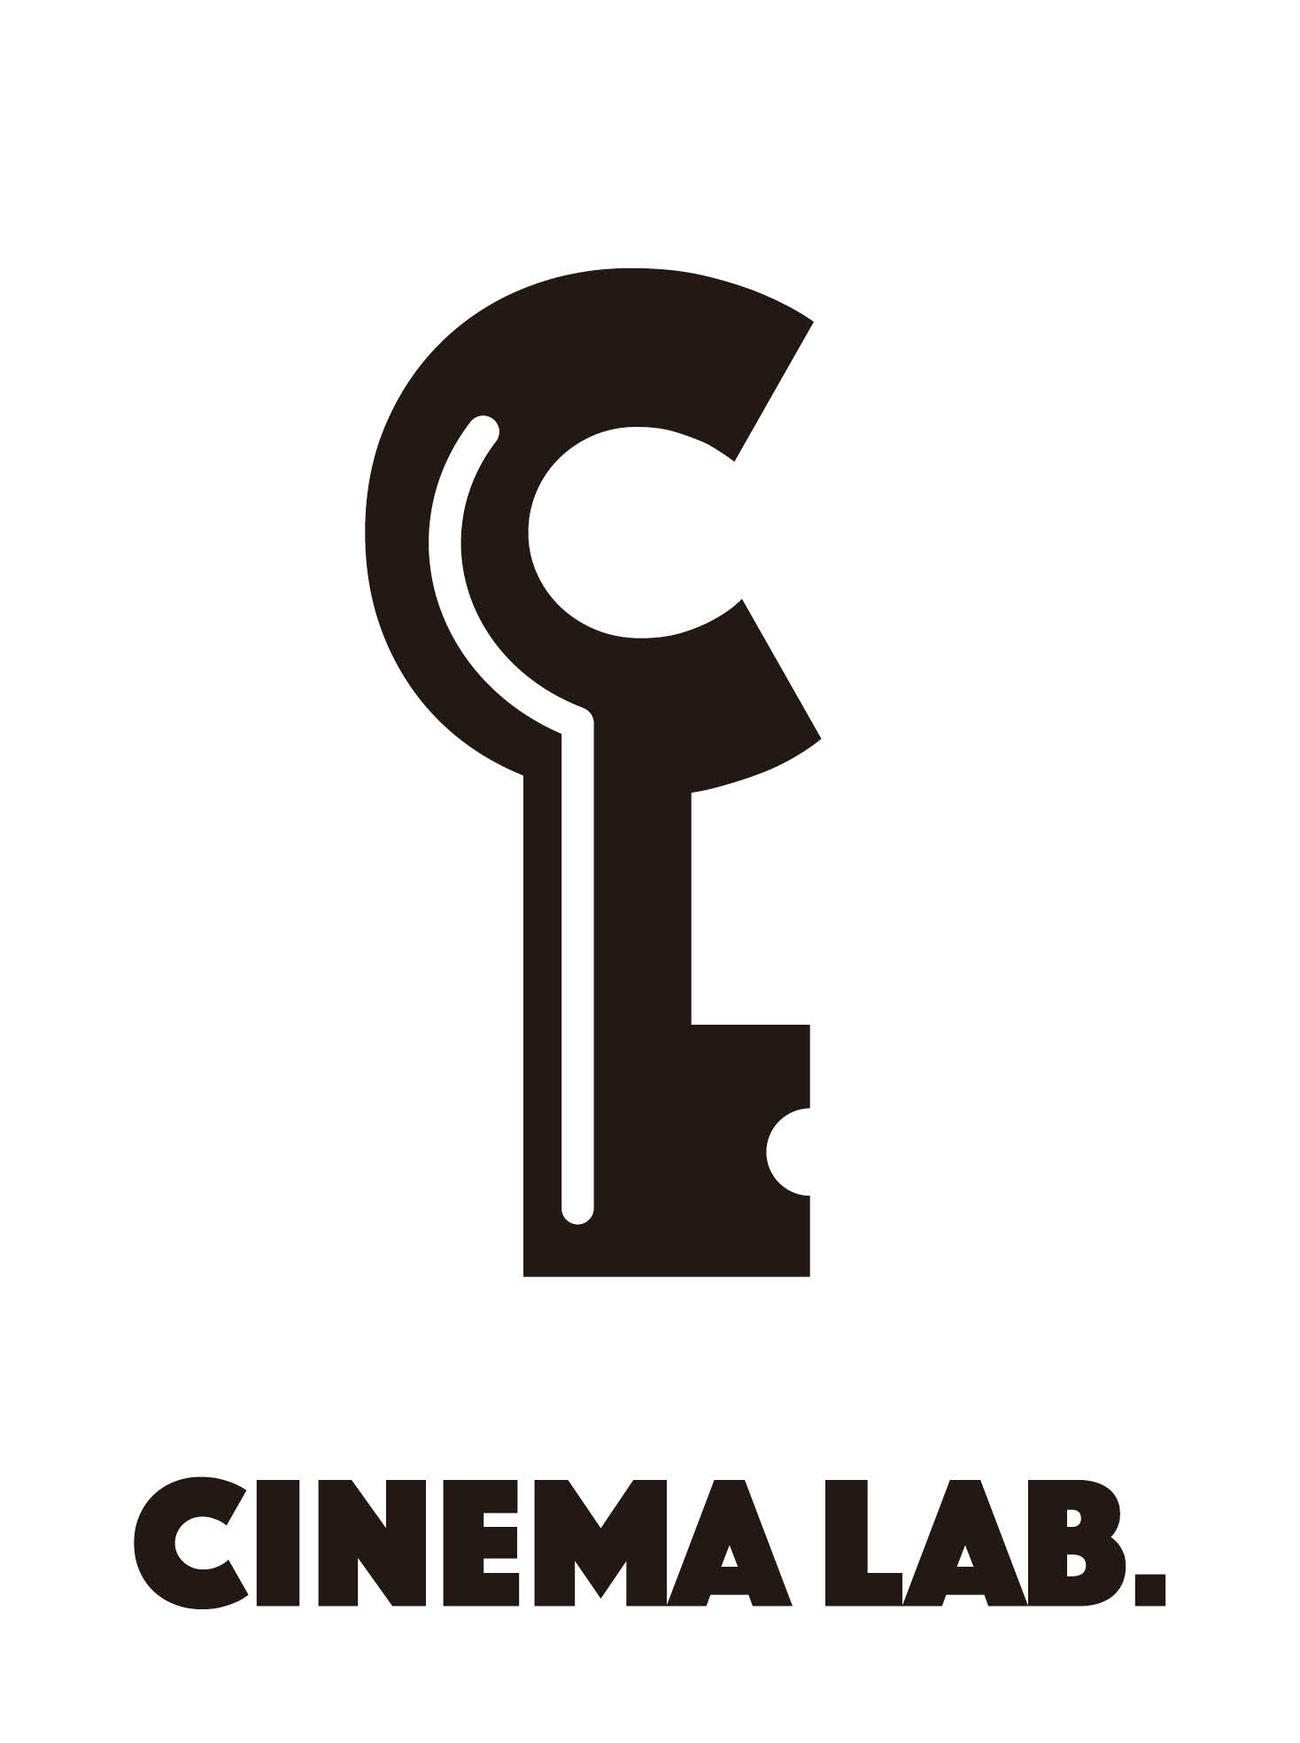 上田慎一郎監督が新作映画「ポプラン」を製作する映画実験レーベル「シネマラボ」のロゴ